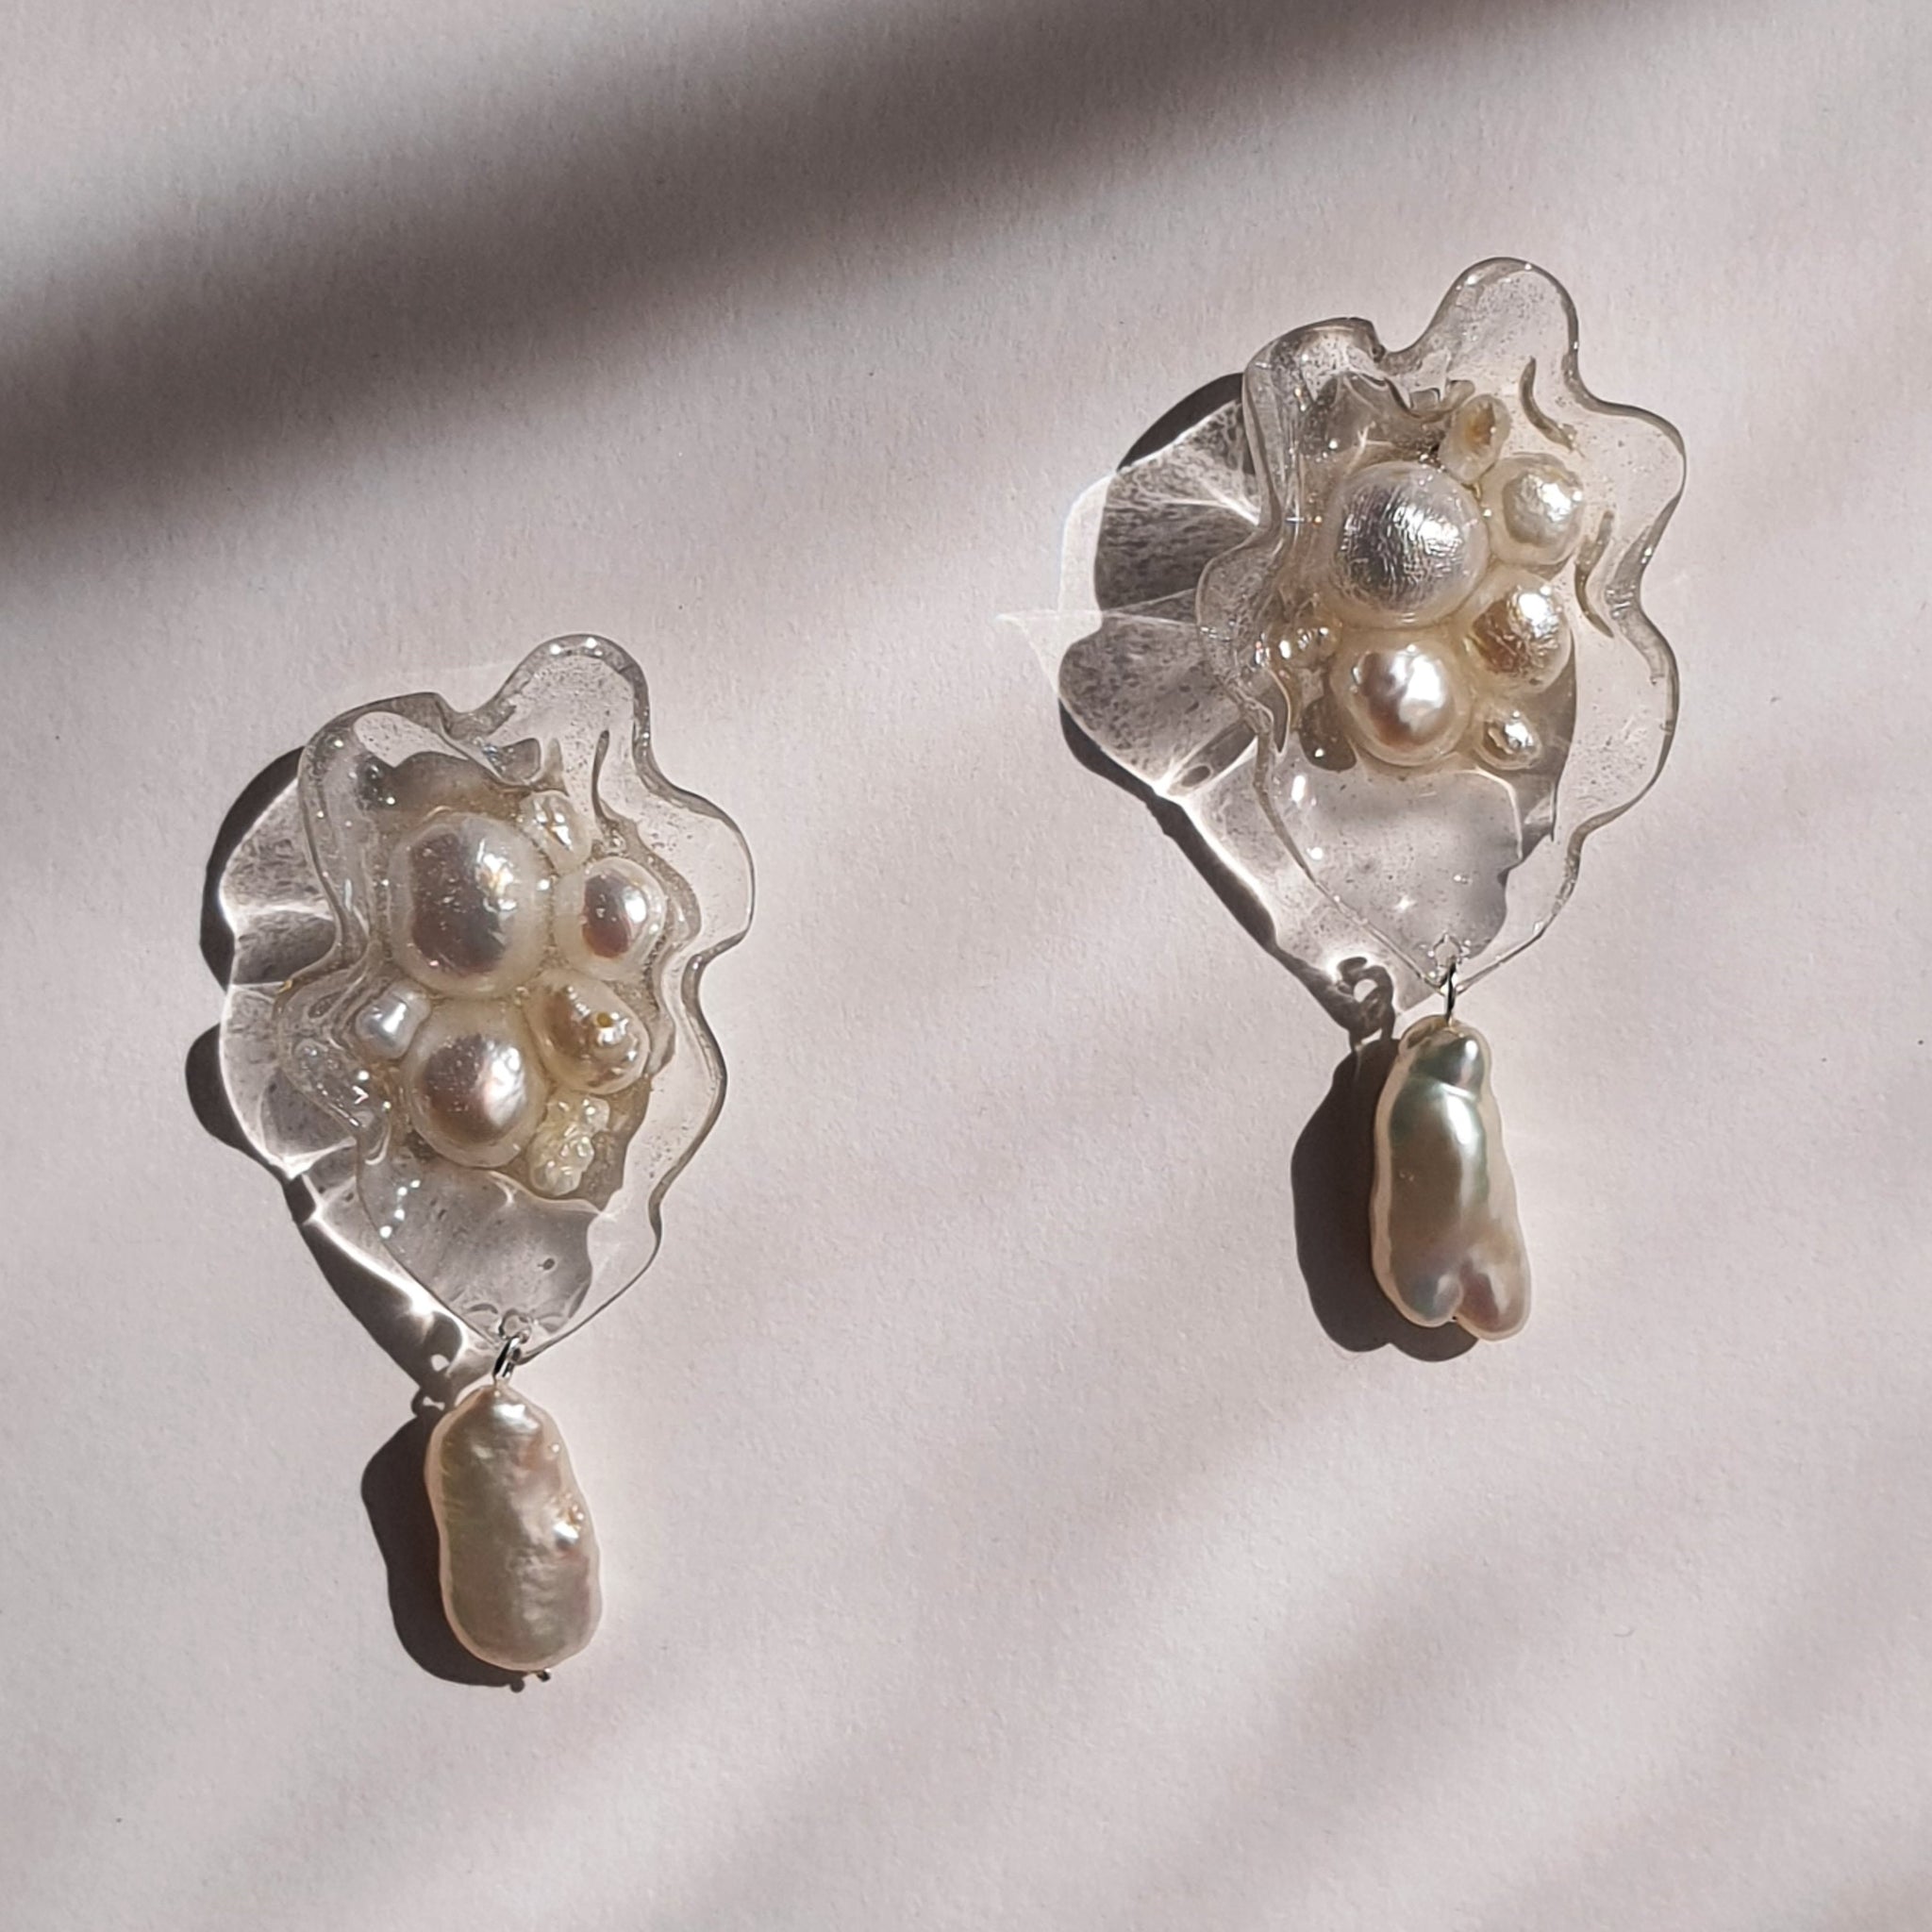 Aros abstracción marina con perlas barrocas